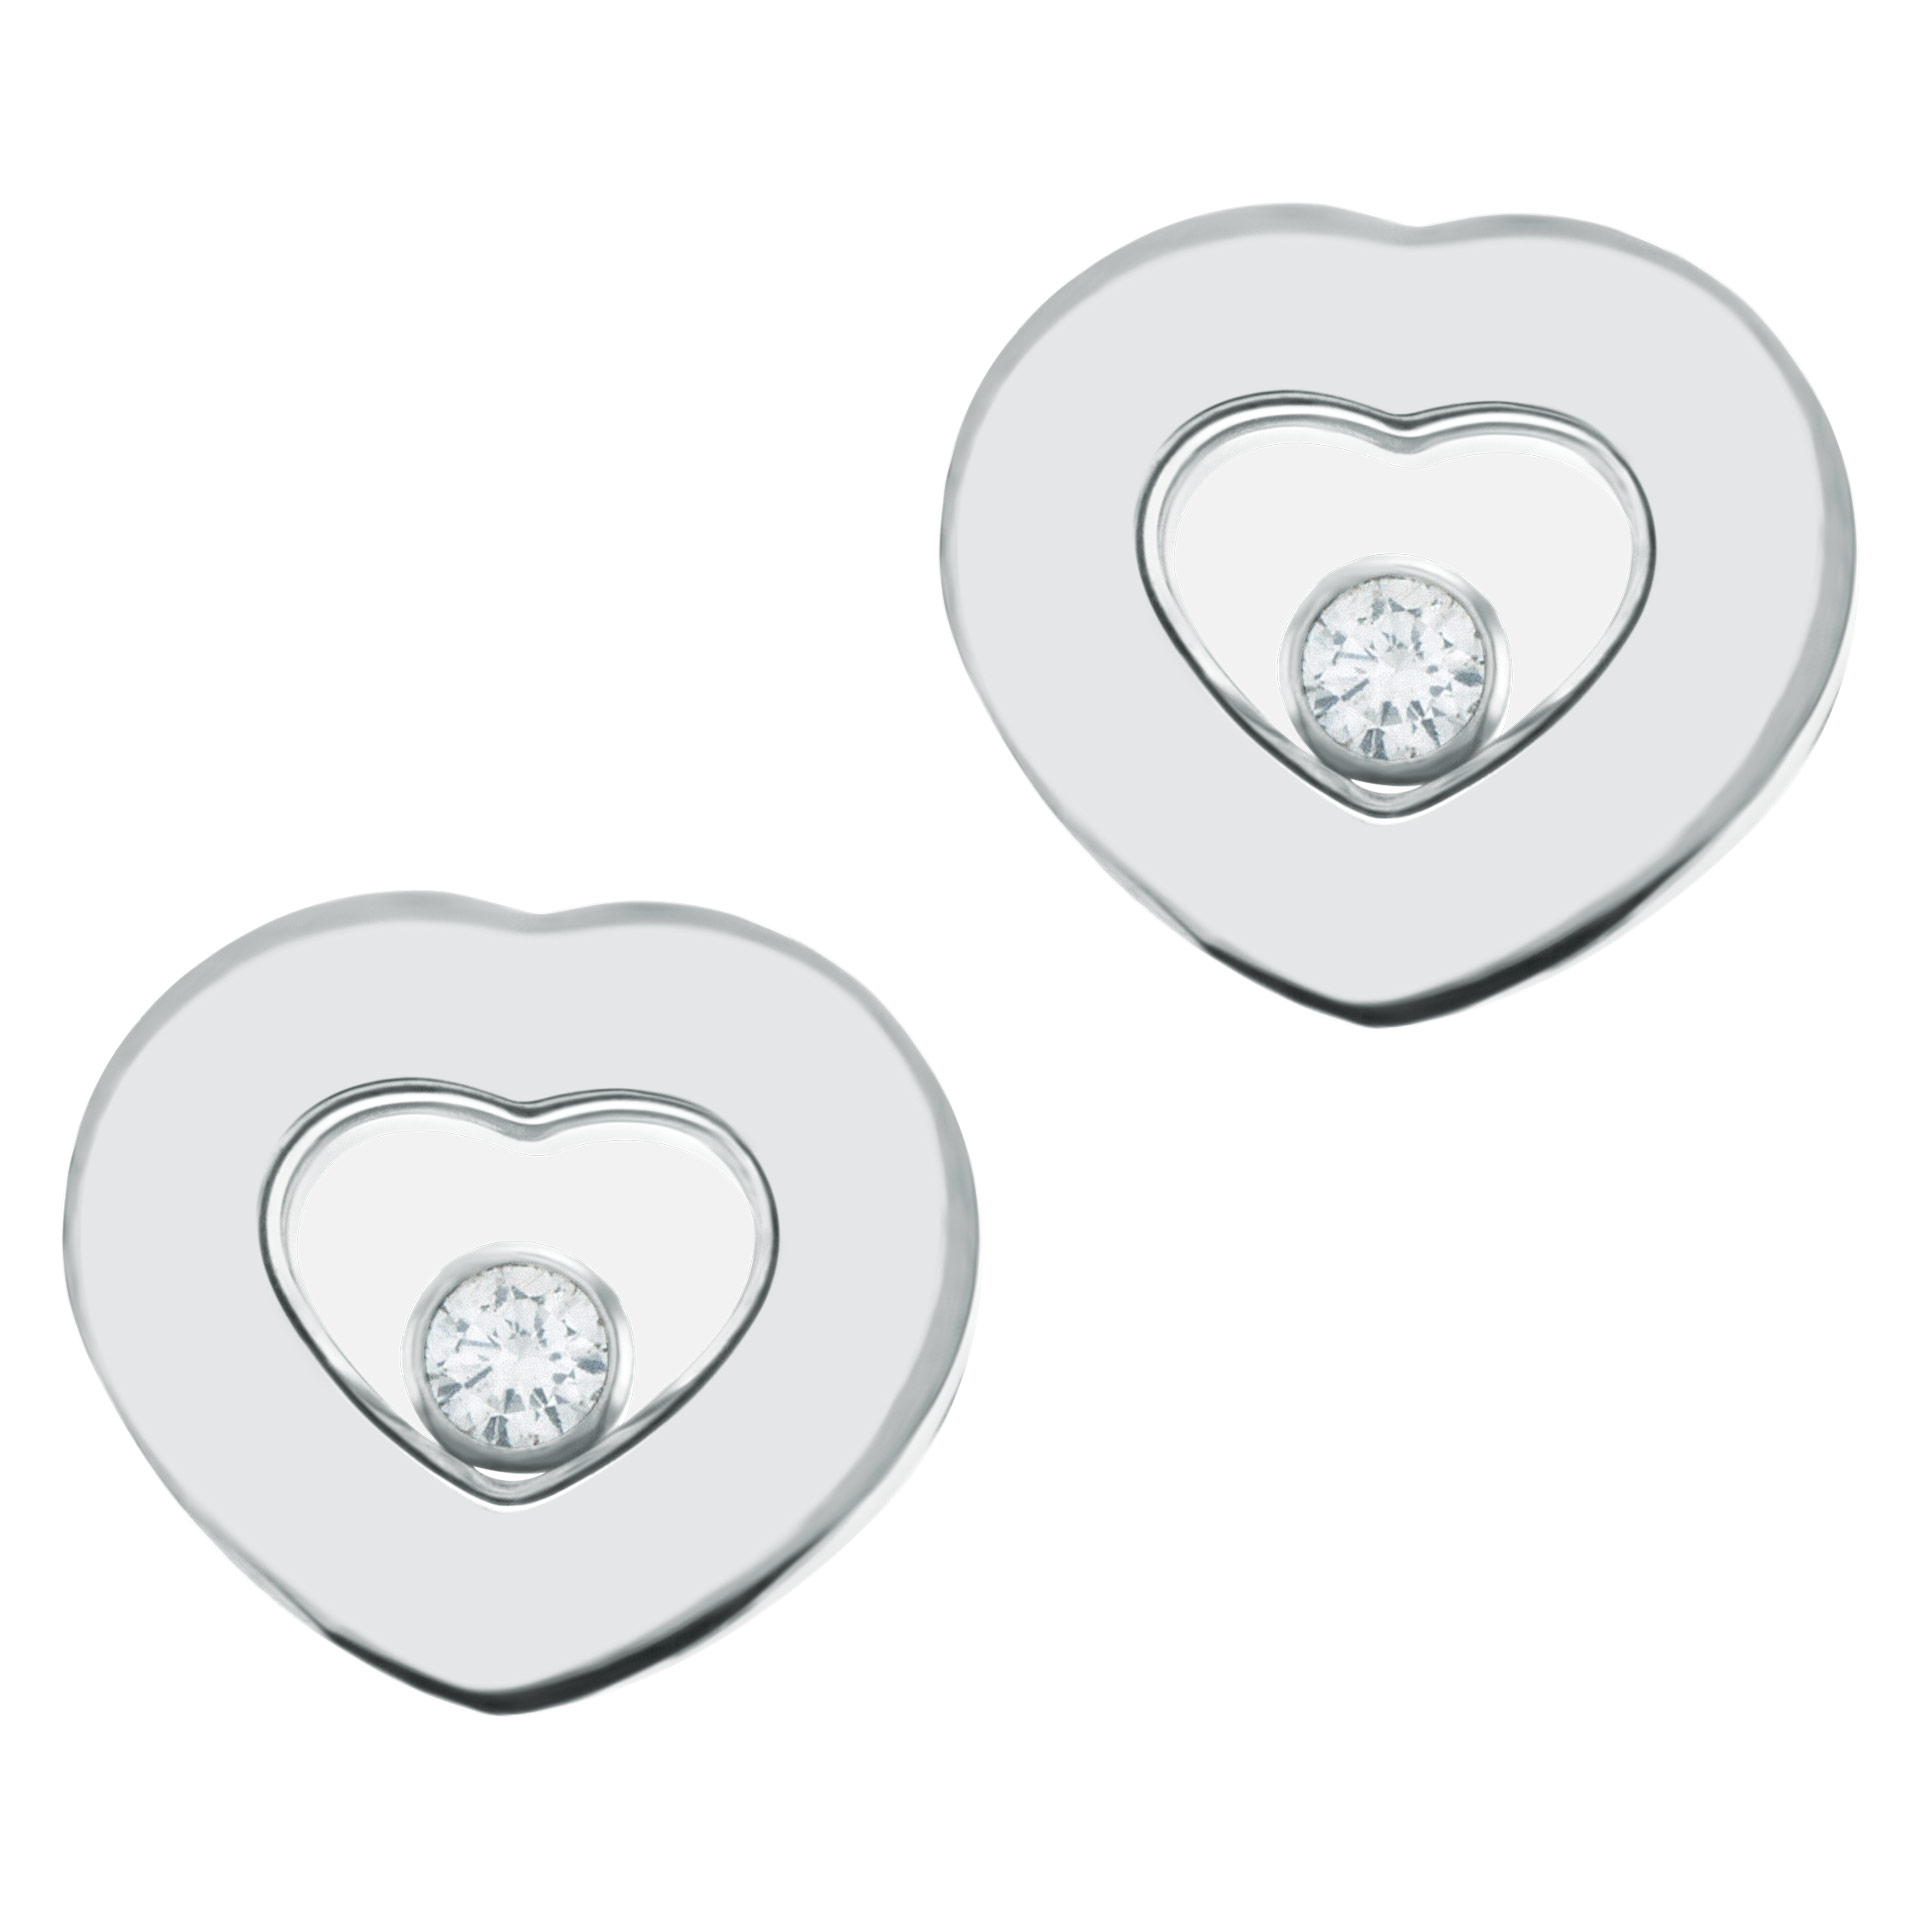 Chopard Heart Floating Diamond ICON Earrings in 18k white gold